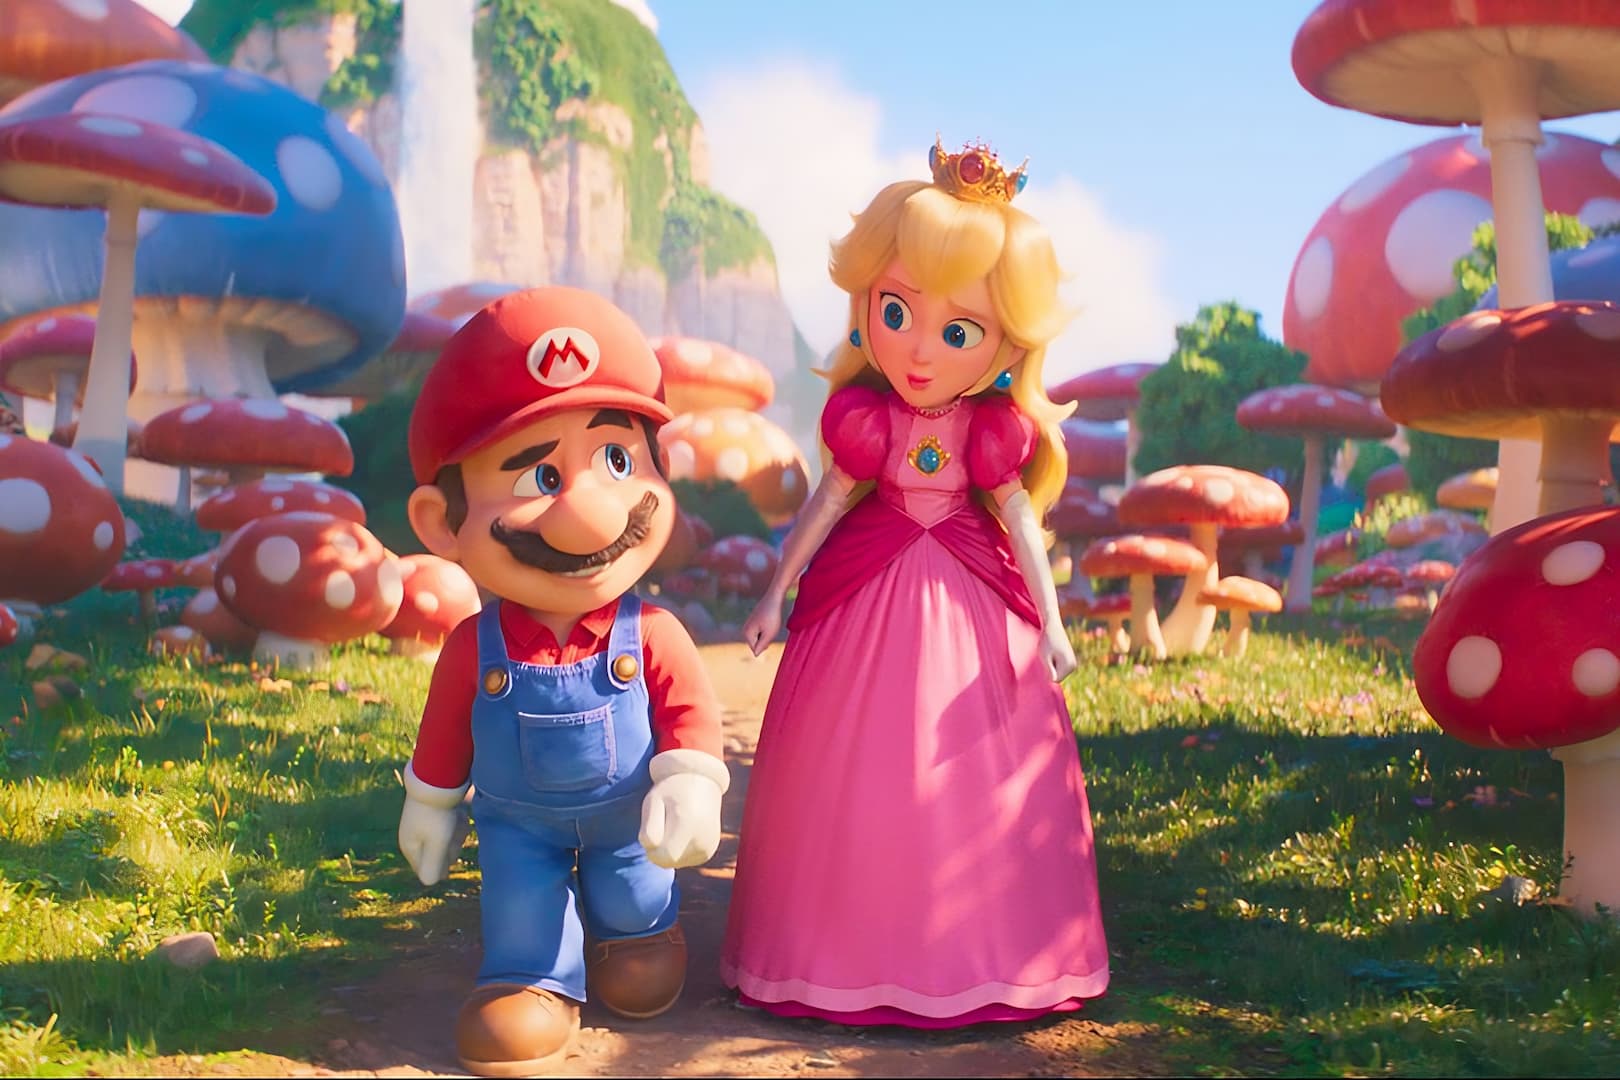 Super Mario Bros.: O Filme bate novos recordes de bilheteria